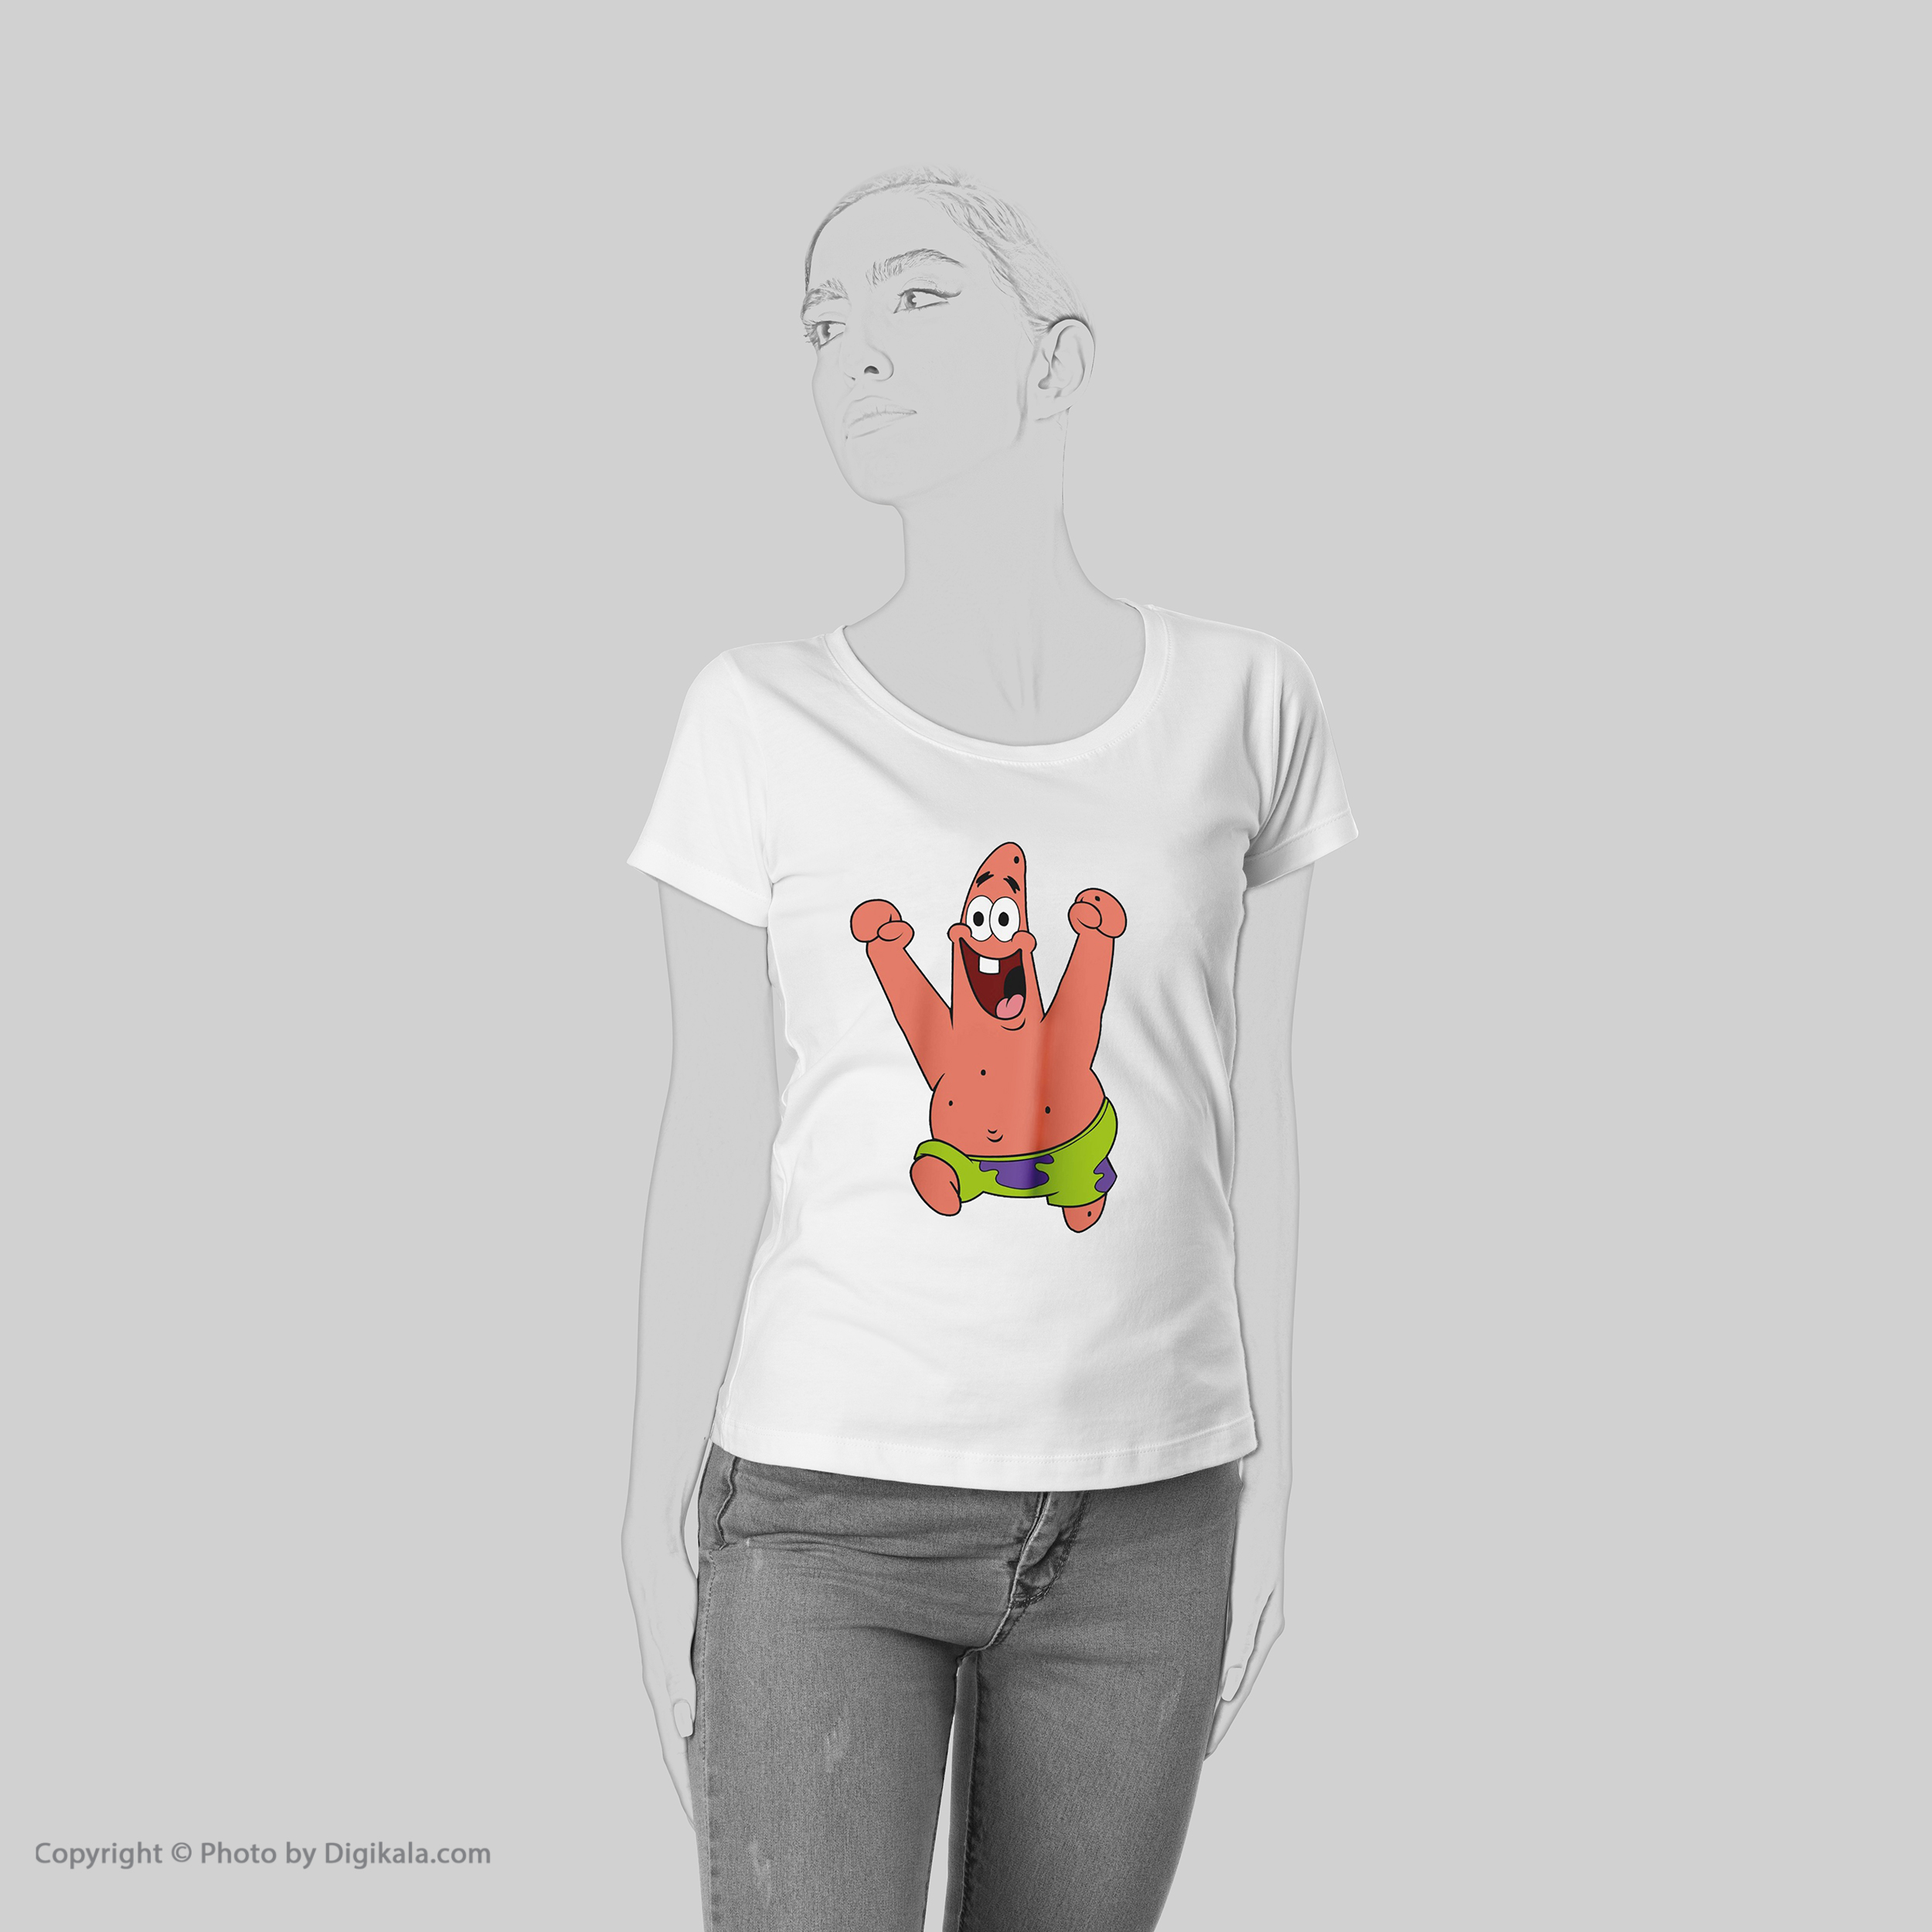 تی شرت زنانه به رسم طرح پاتریک کد 559 -  - 6